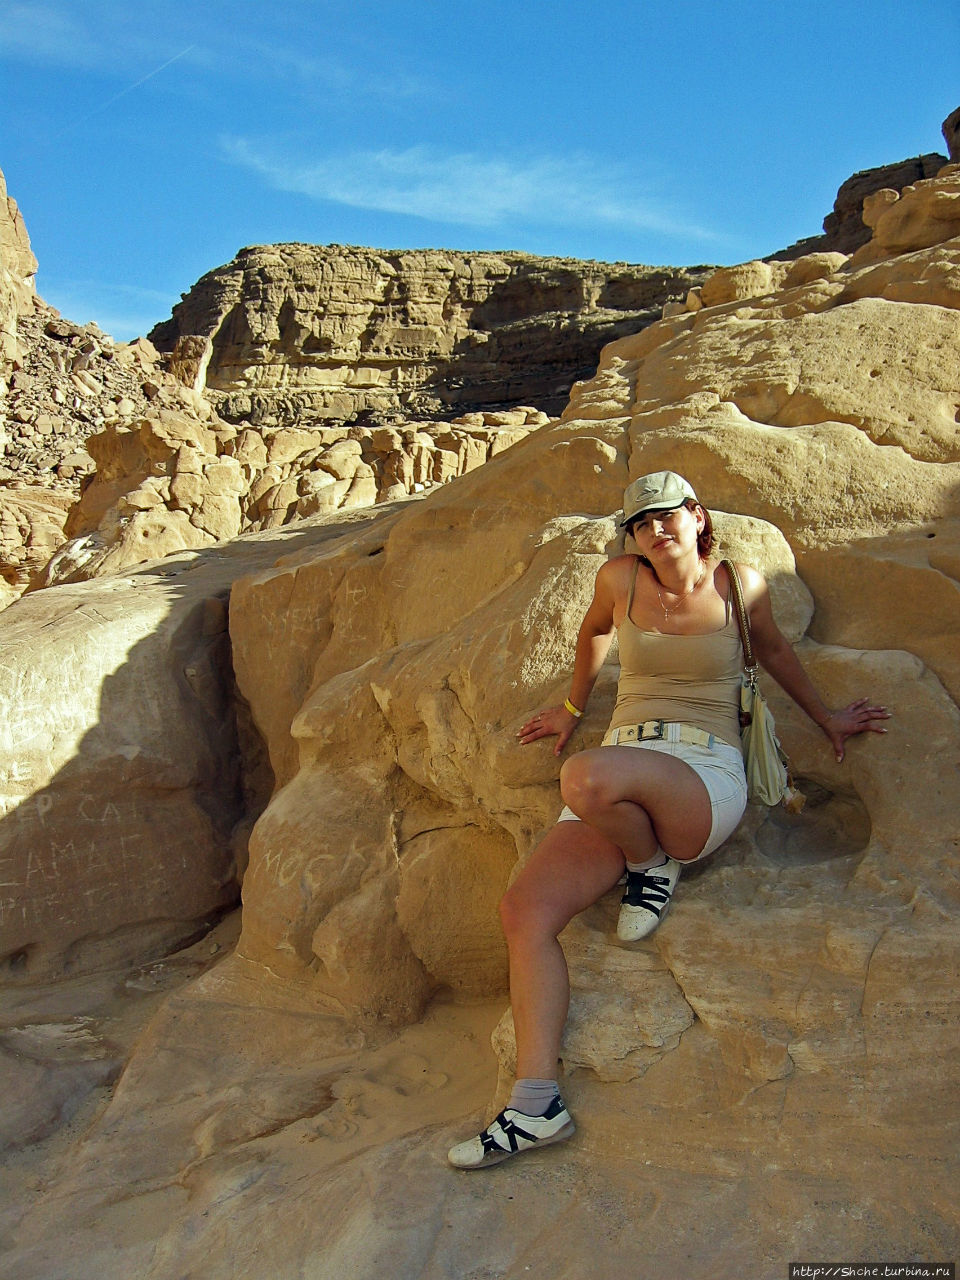 Цветной каньон Цветной Каньон (Синай), Египет